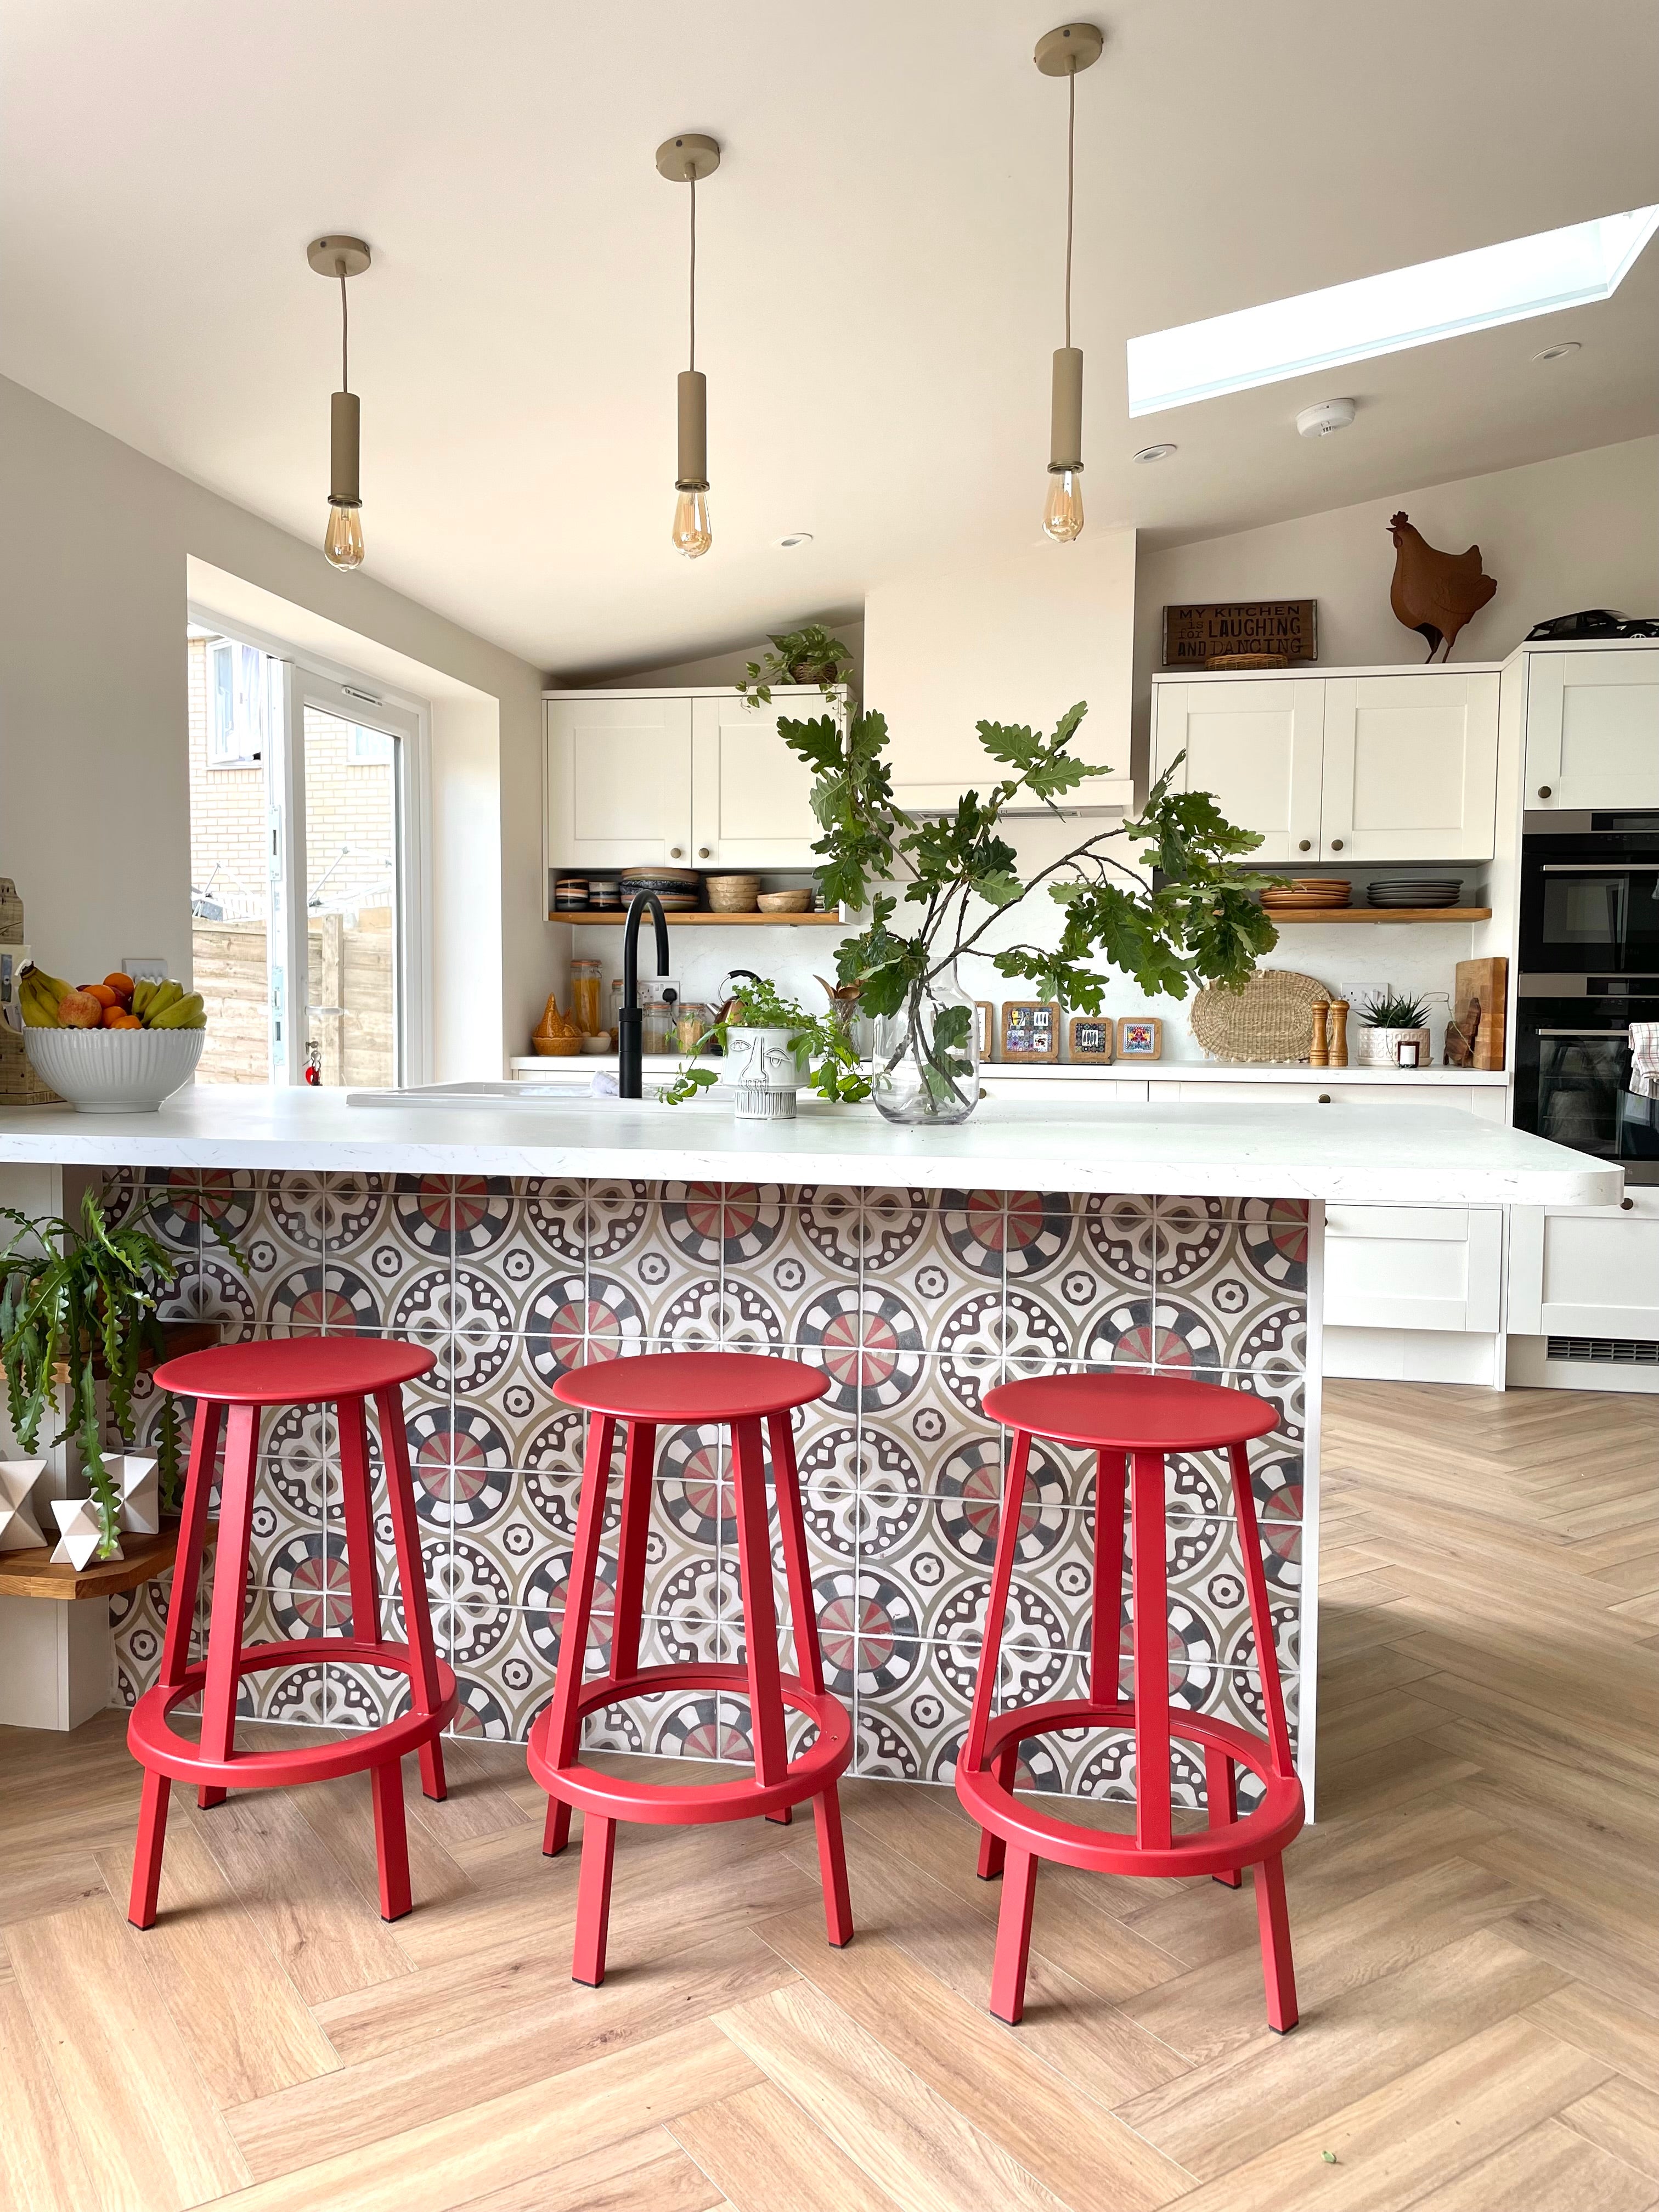 Interior design, kitchen tiles